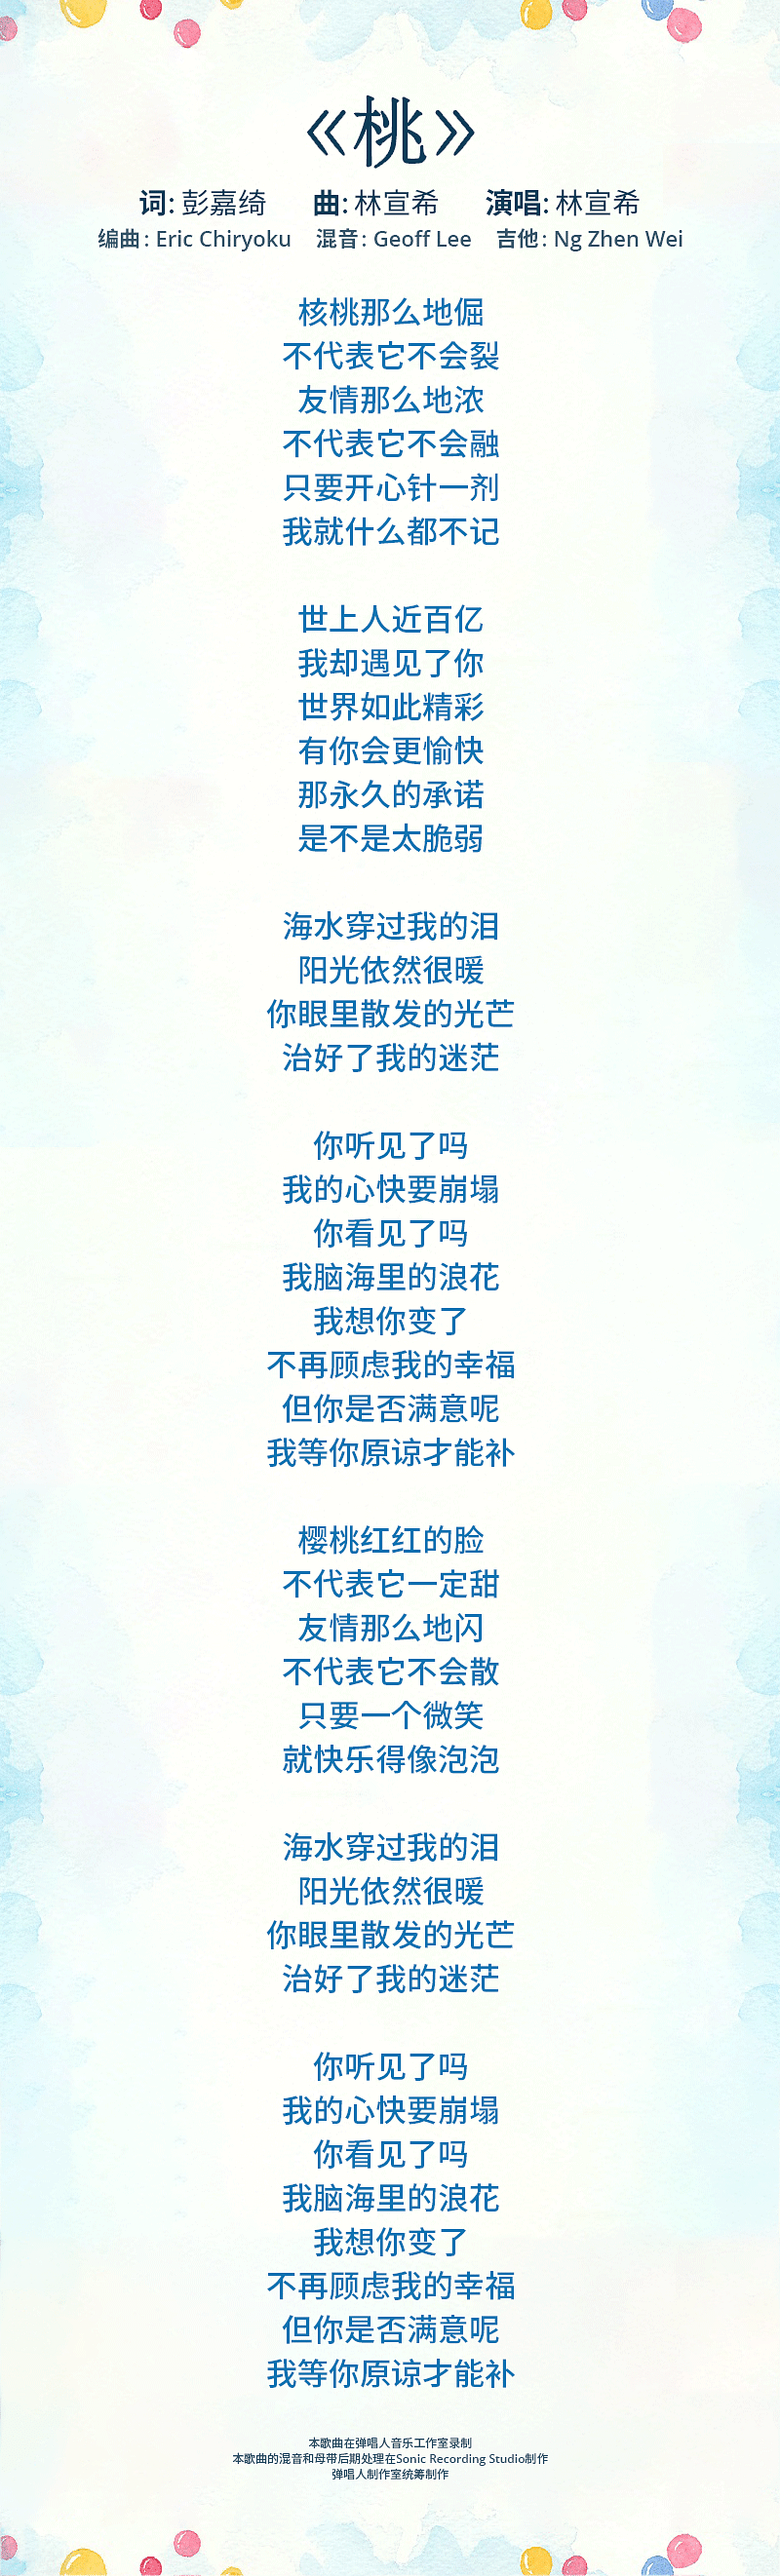 tao-lyrics-mobile.png